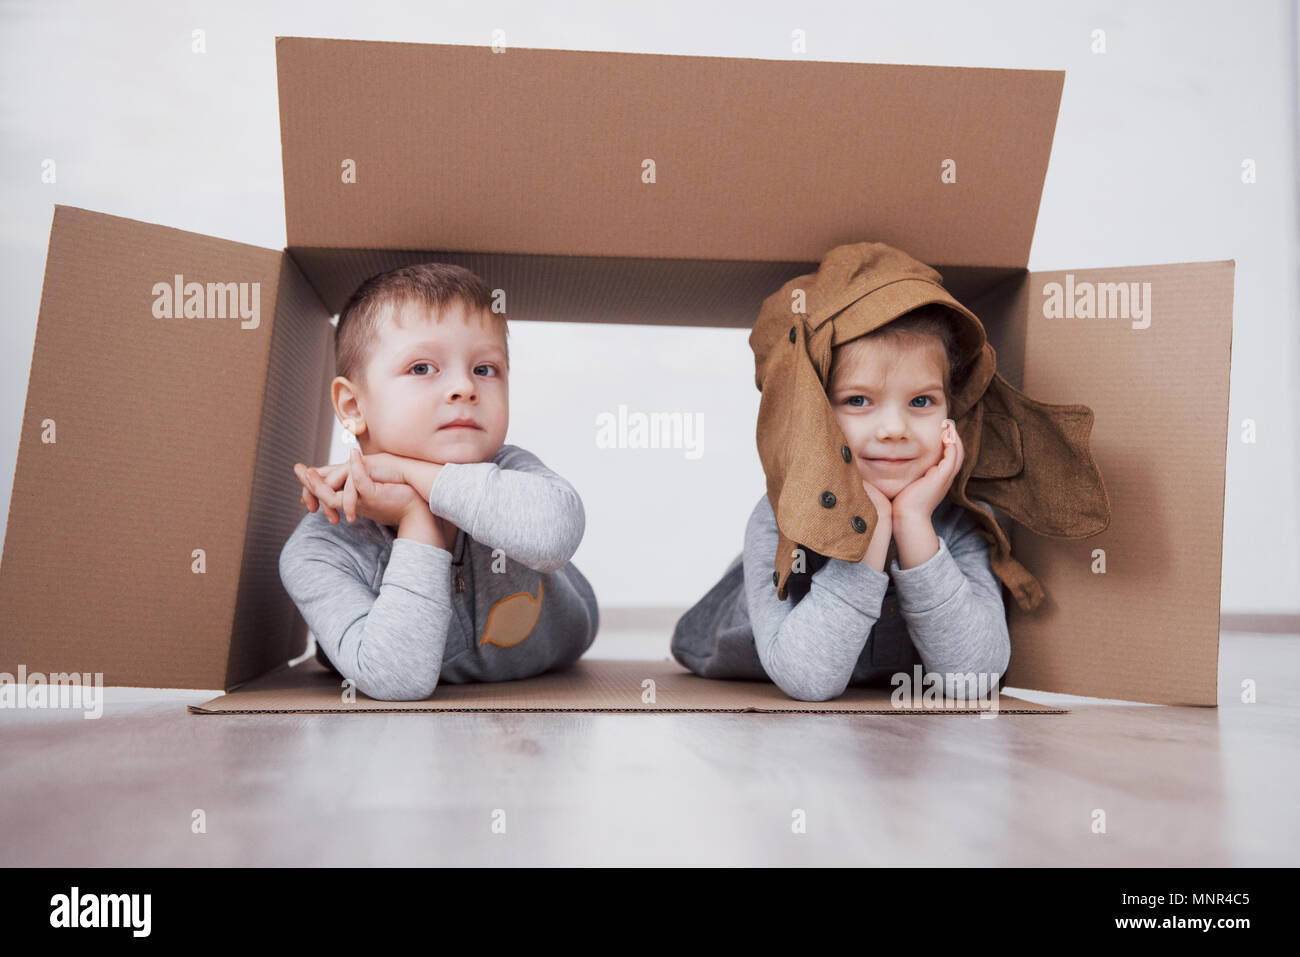 Zwei kleine Kinder, Junge und Mädchen spielen in Kartons. Konzept Foto. Kinder haben Spaß Stockfoto